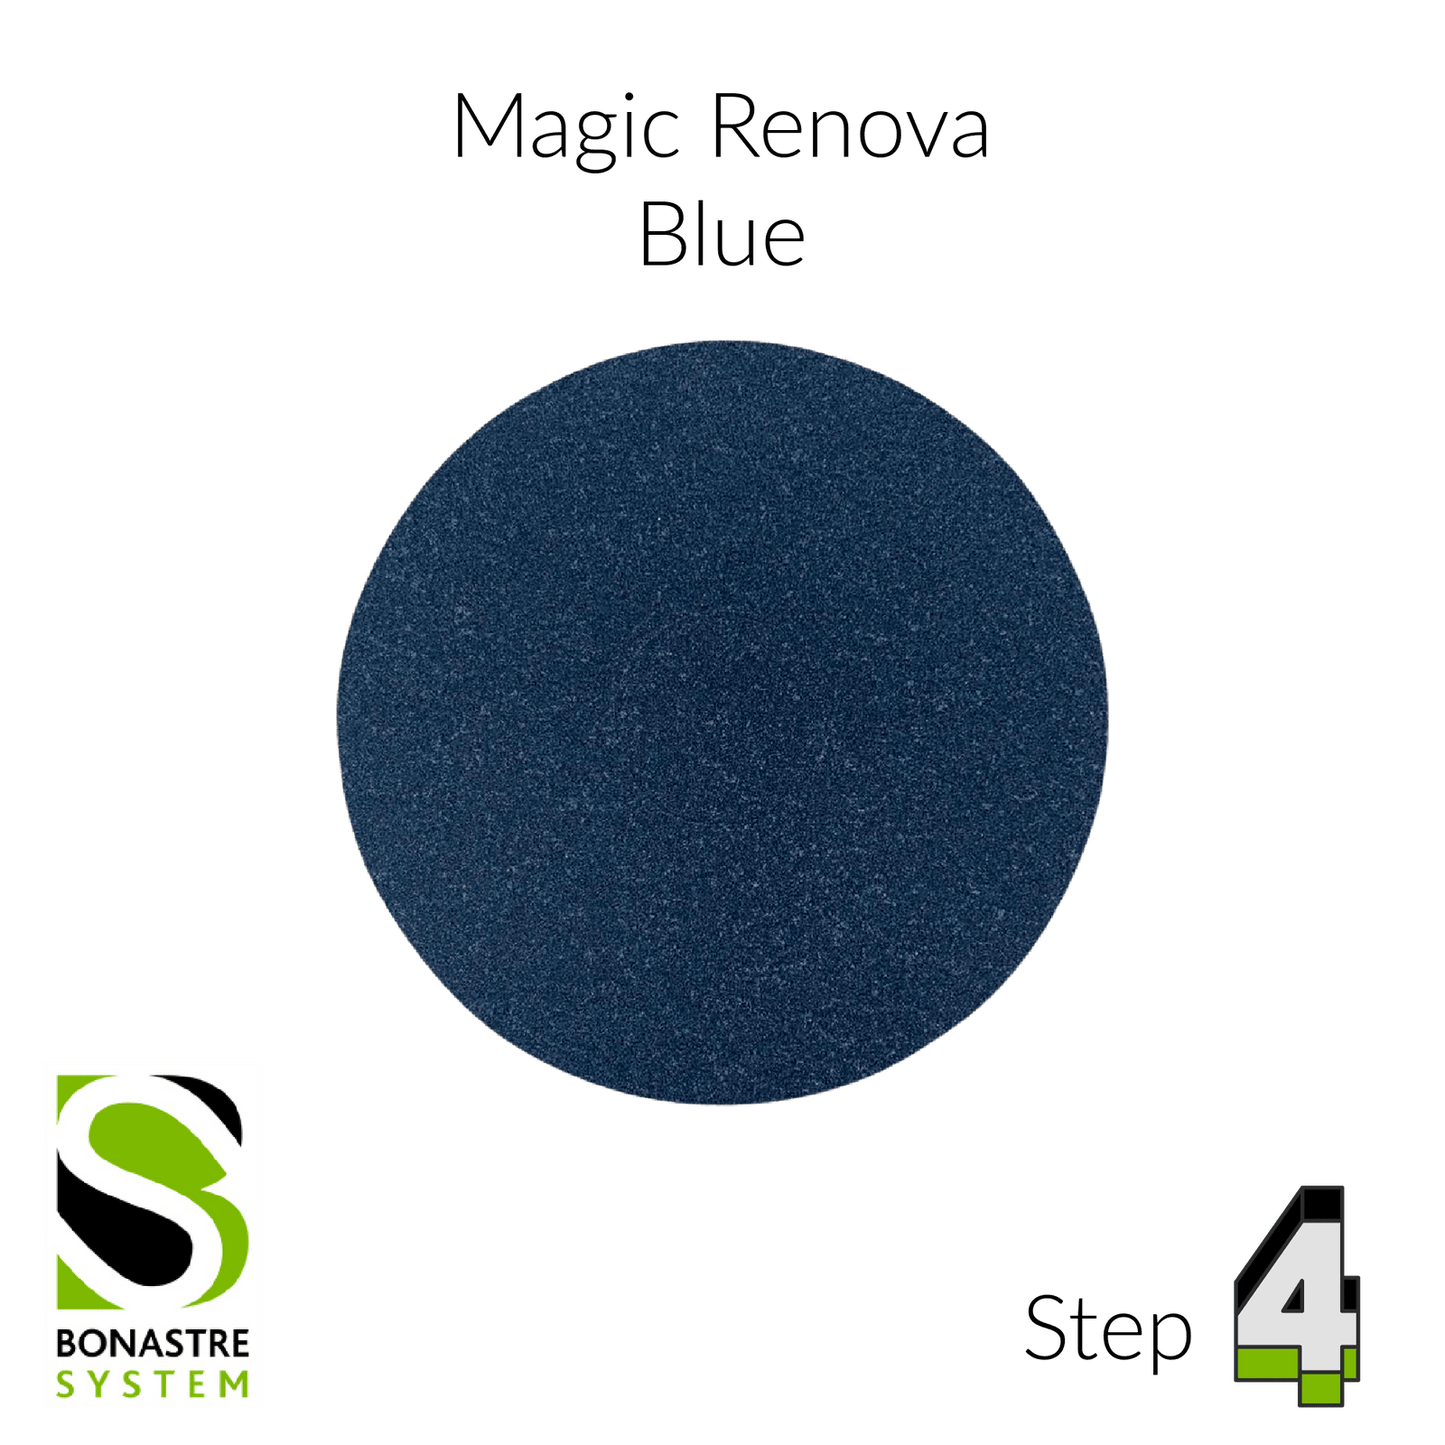 Stone Polishing Kit - 5" Magic Renova Kit + 1 replacement set - Clean Center